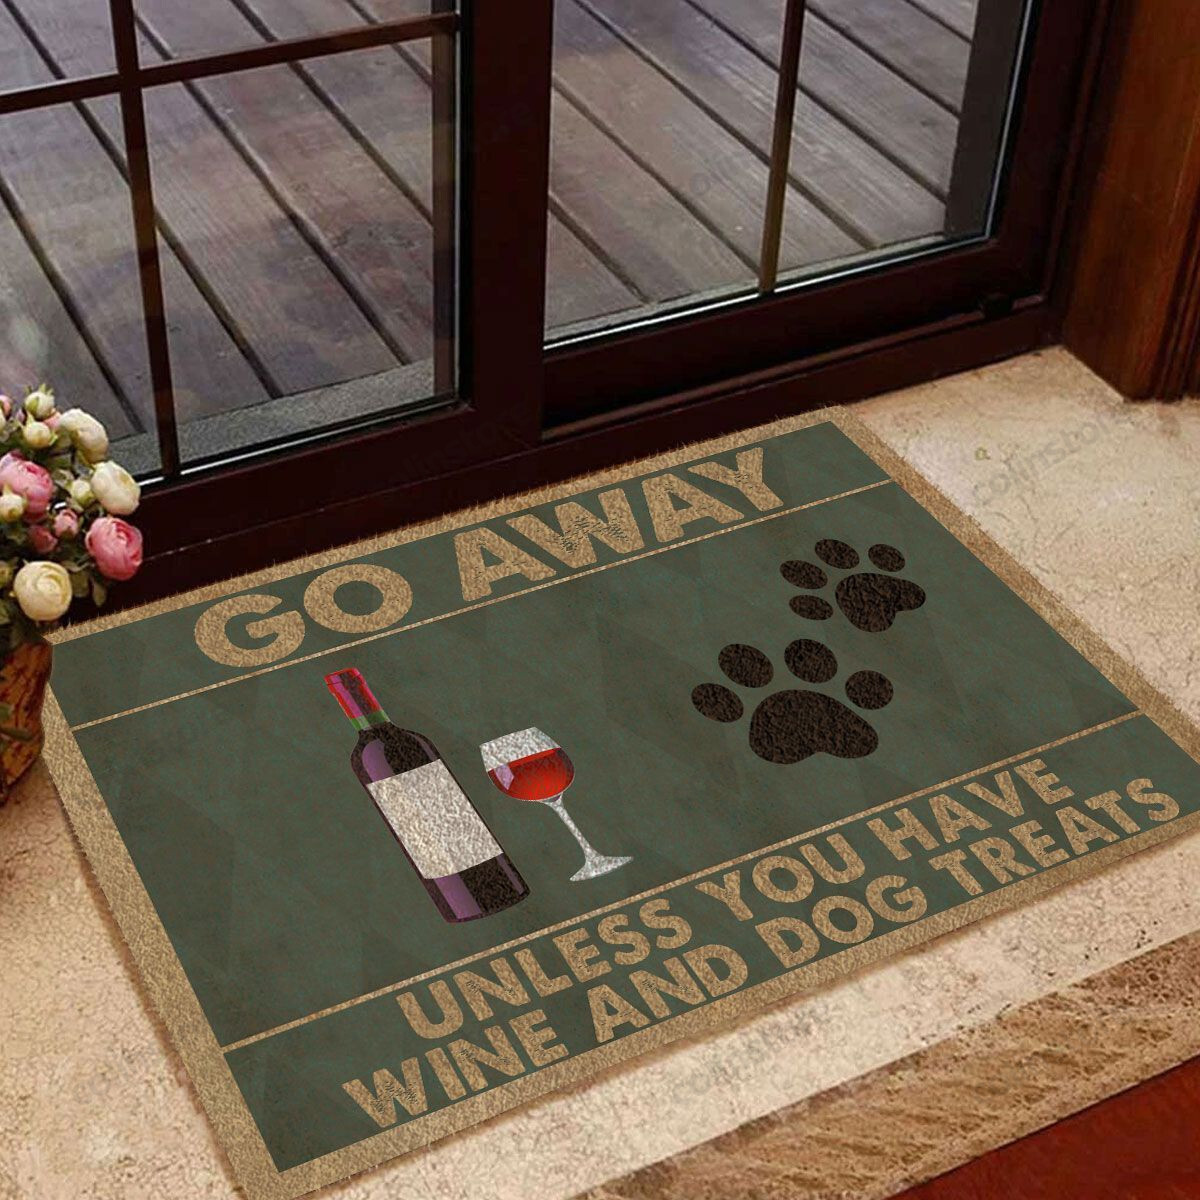 Go Away Unless You Have Wine And Dog Treats Funny Outdoor Indoor Wellcome Doormat